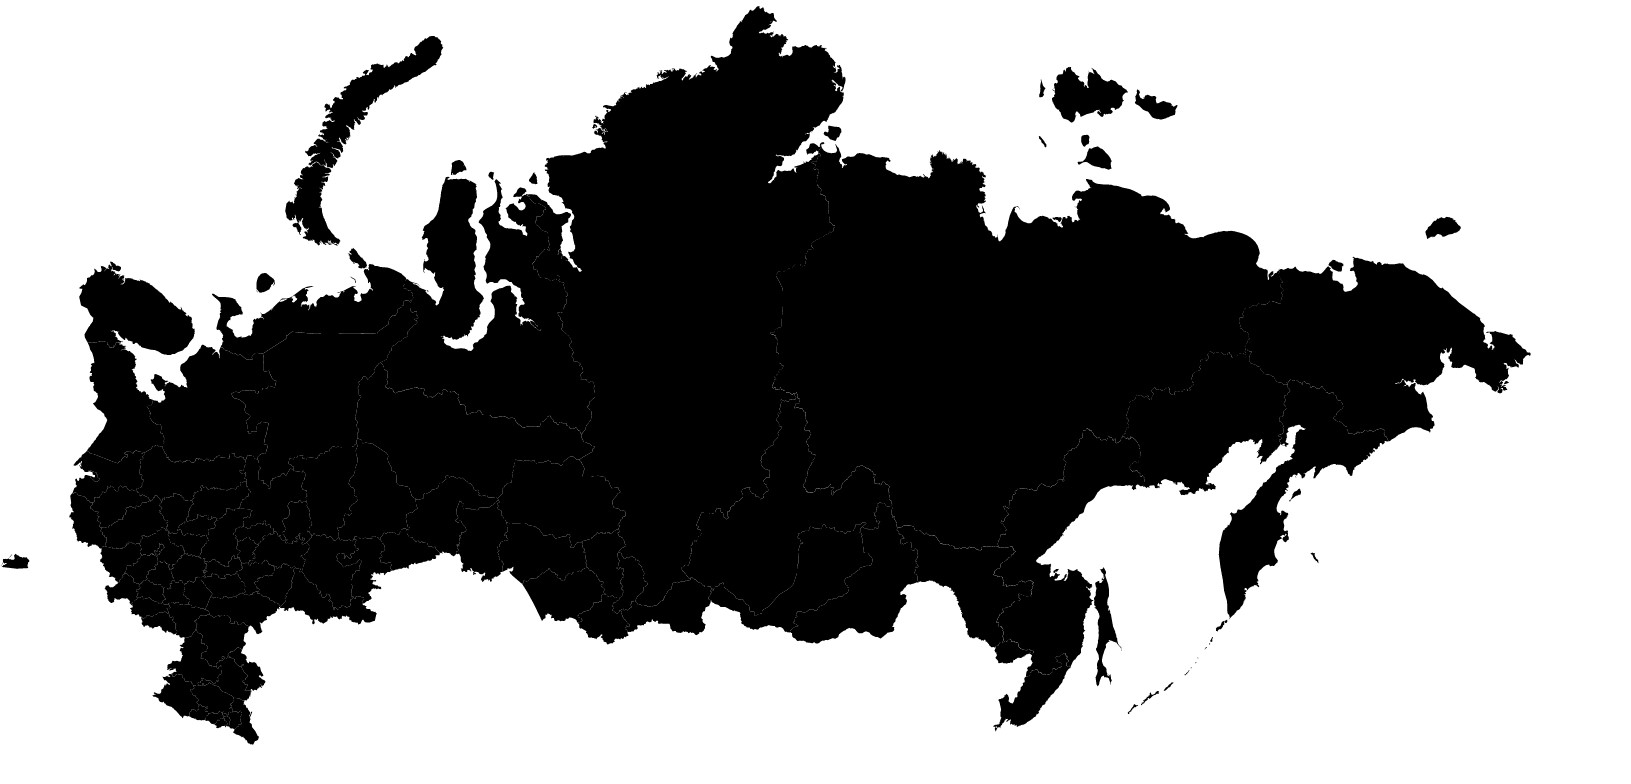 Интерактивная карта субъектов России для новичка. Ошибки, которые допустил я и которые не должны допустить вы - 2